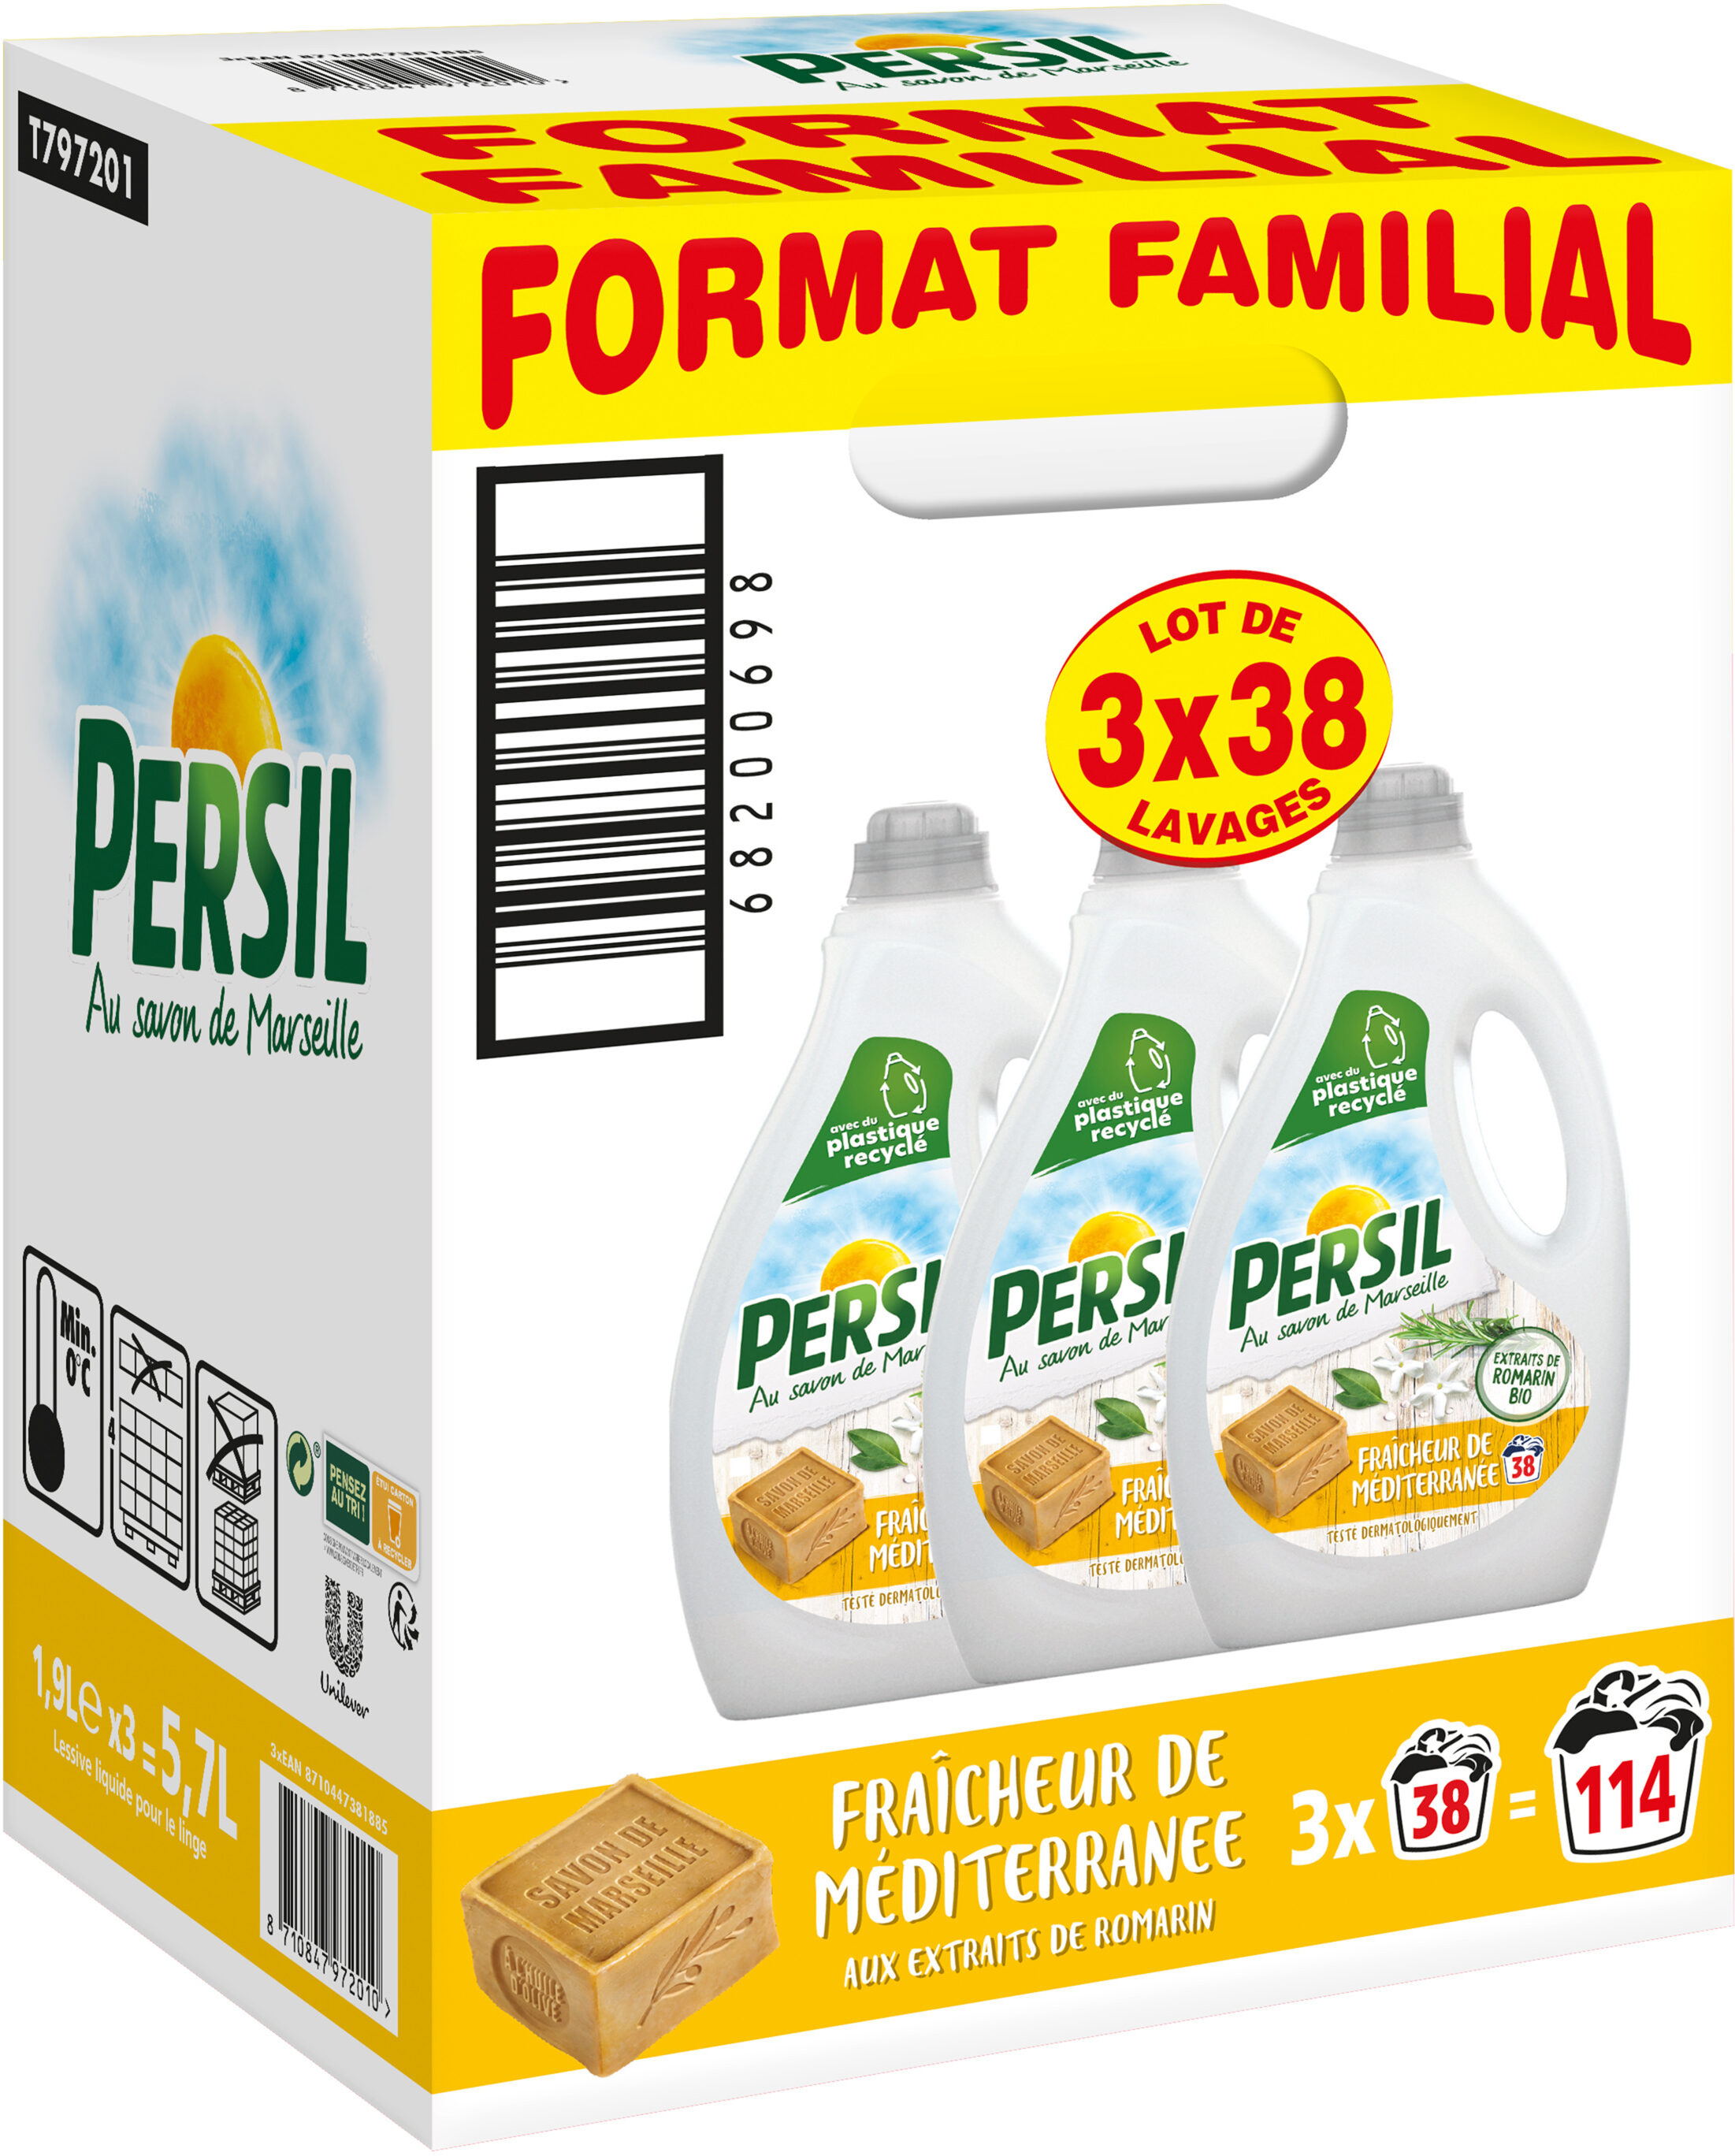 Persil Lessive Liquide Fraîcheur de Méditerranée aux extraits de Romarin Bio - Format Familal Lot 3x1.9L - 114 Lavages - Product - fr